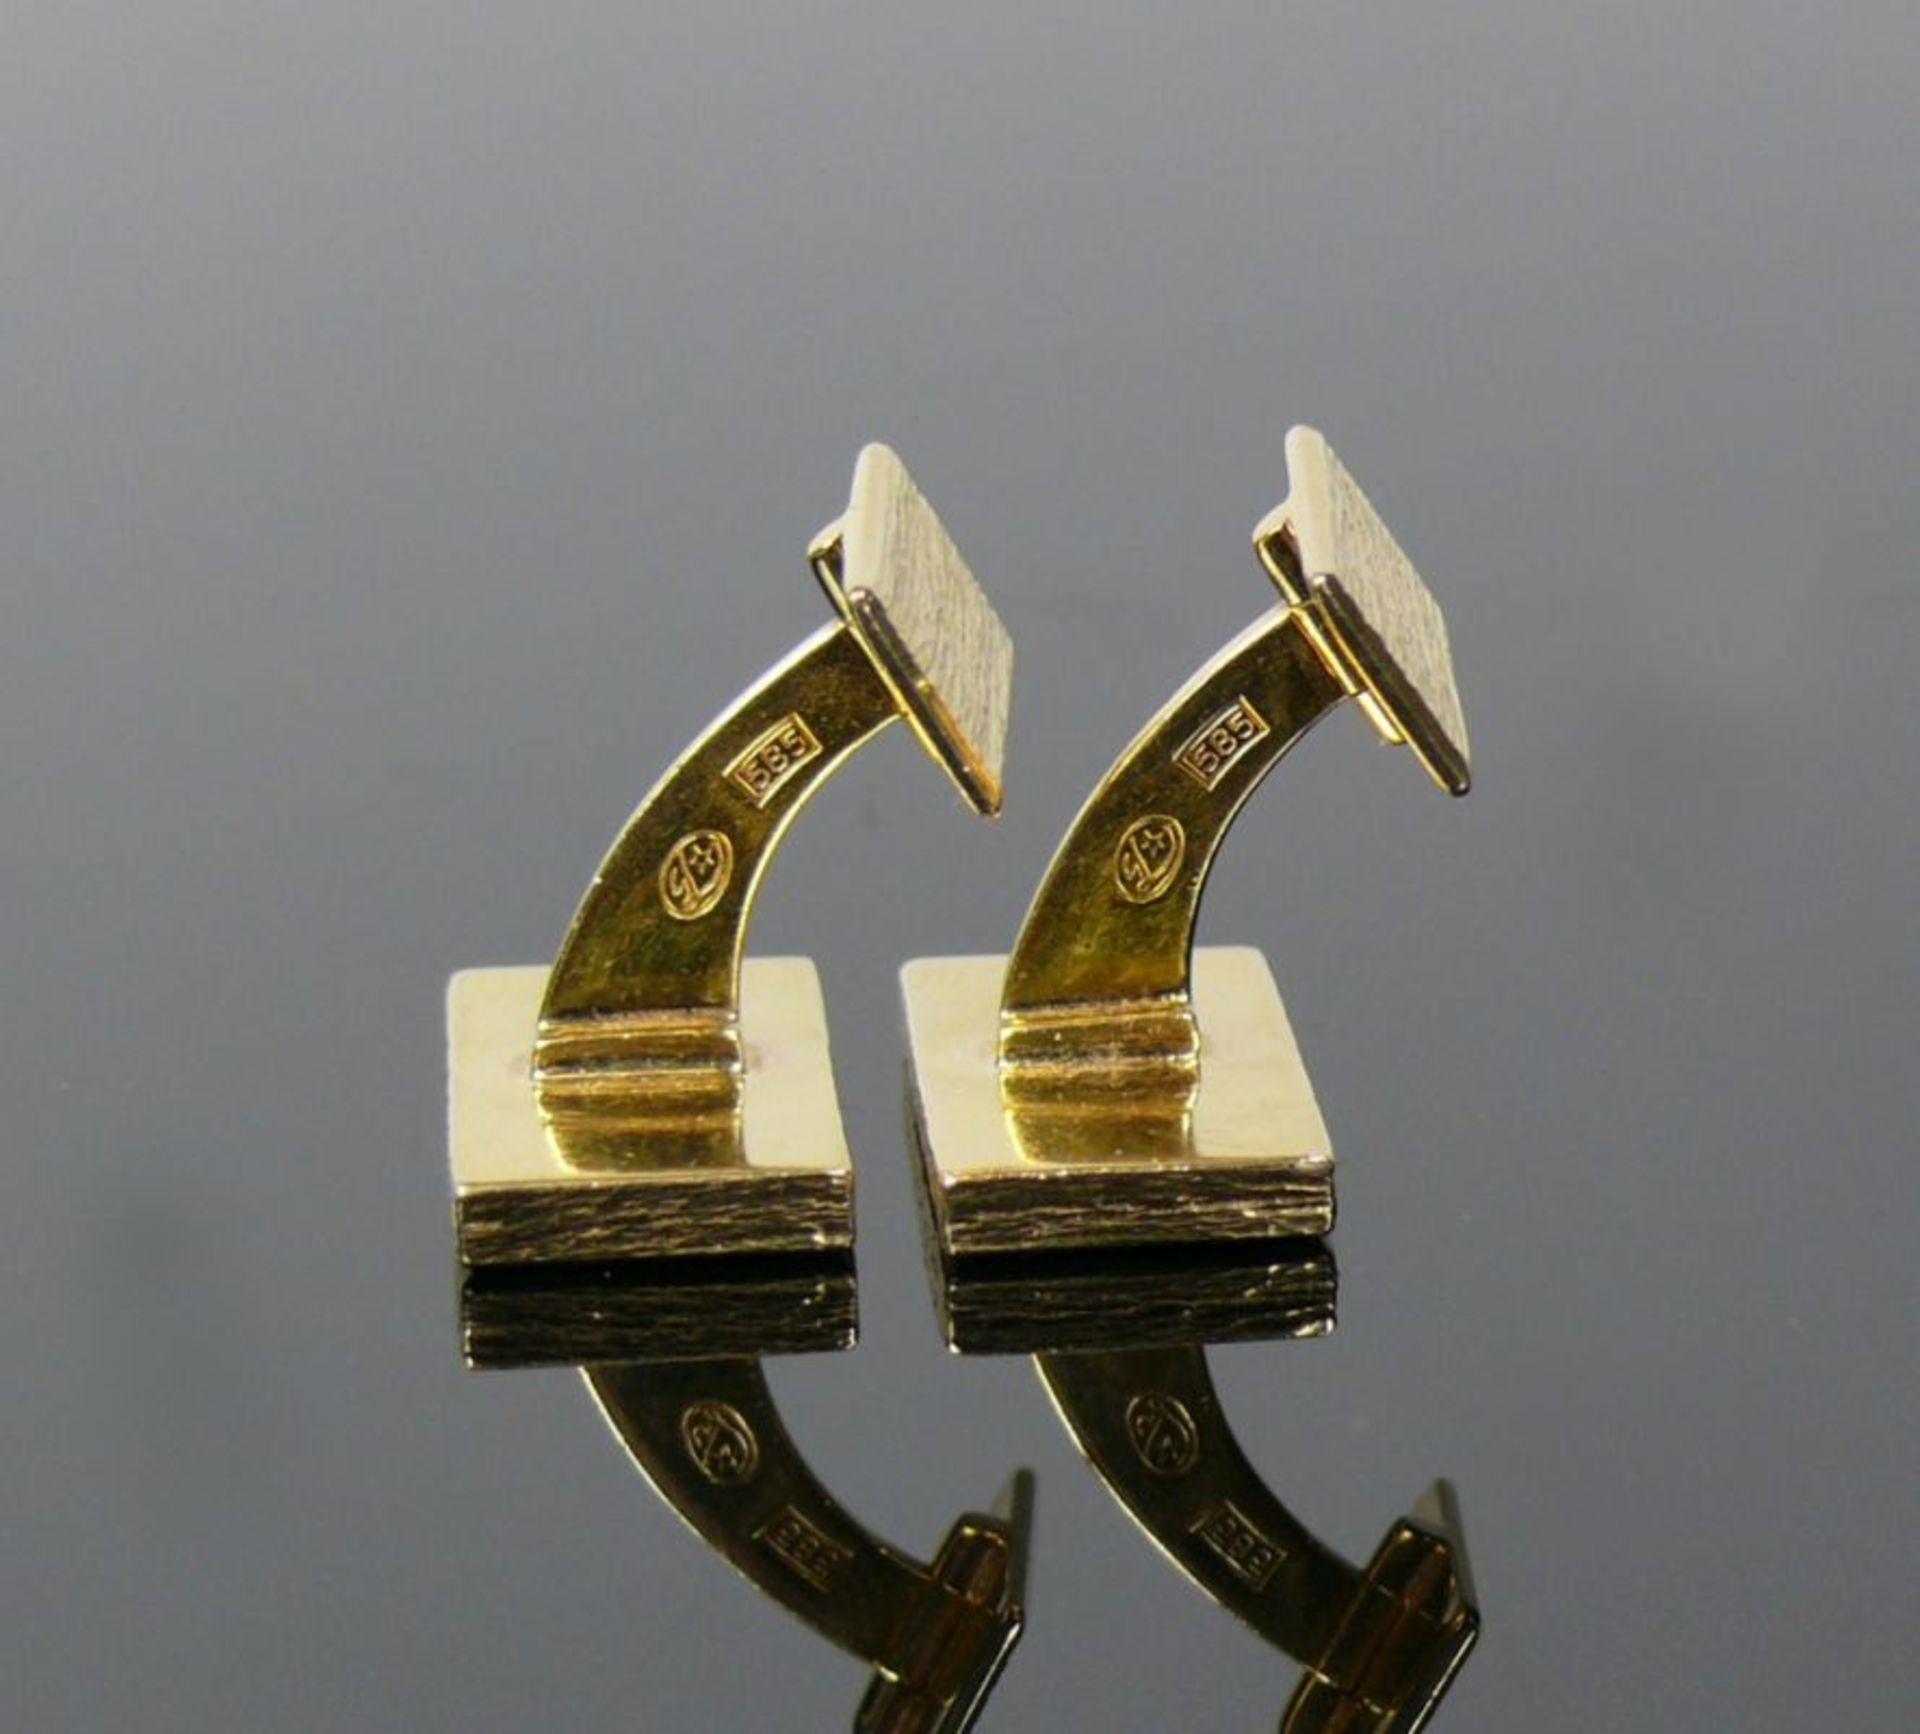 Paar Manschettenknöpfe14ct GG; rechteckige, schlichte Form; 25,5g; Goldschmiedearbeit - Bild 4 aus 4